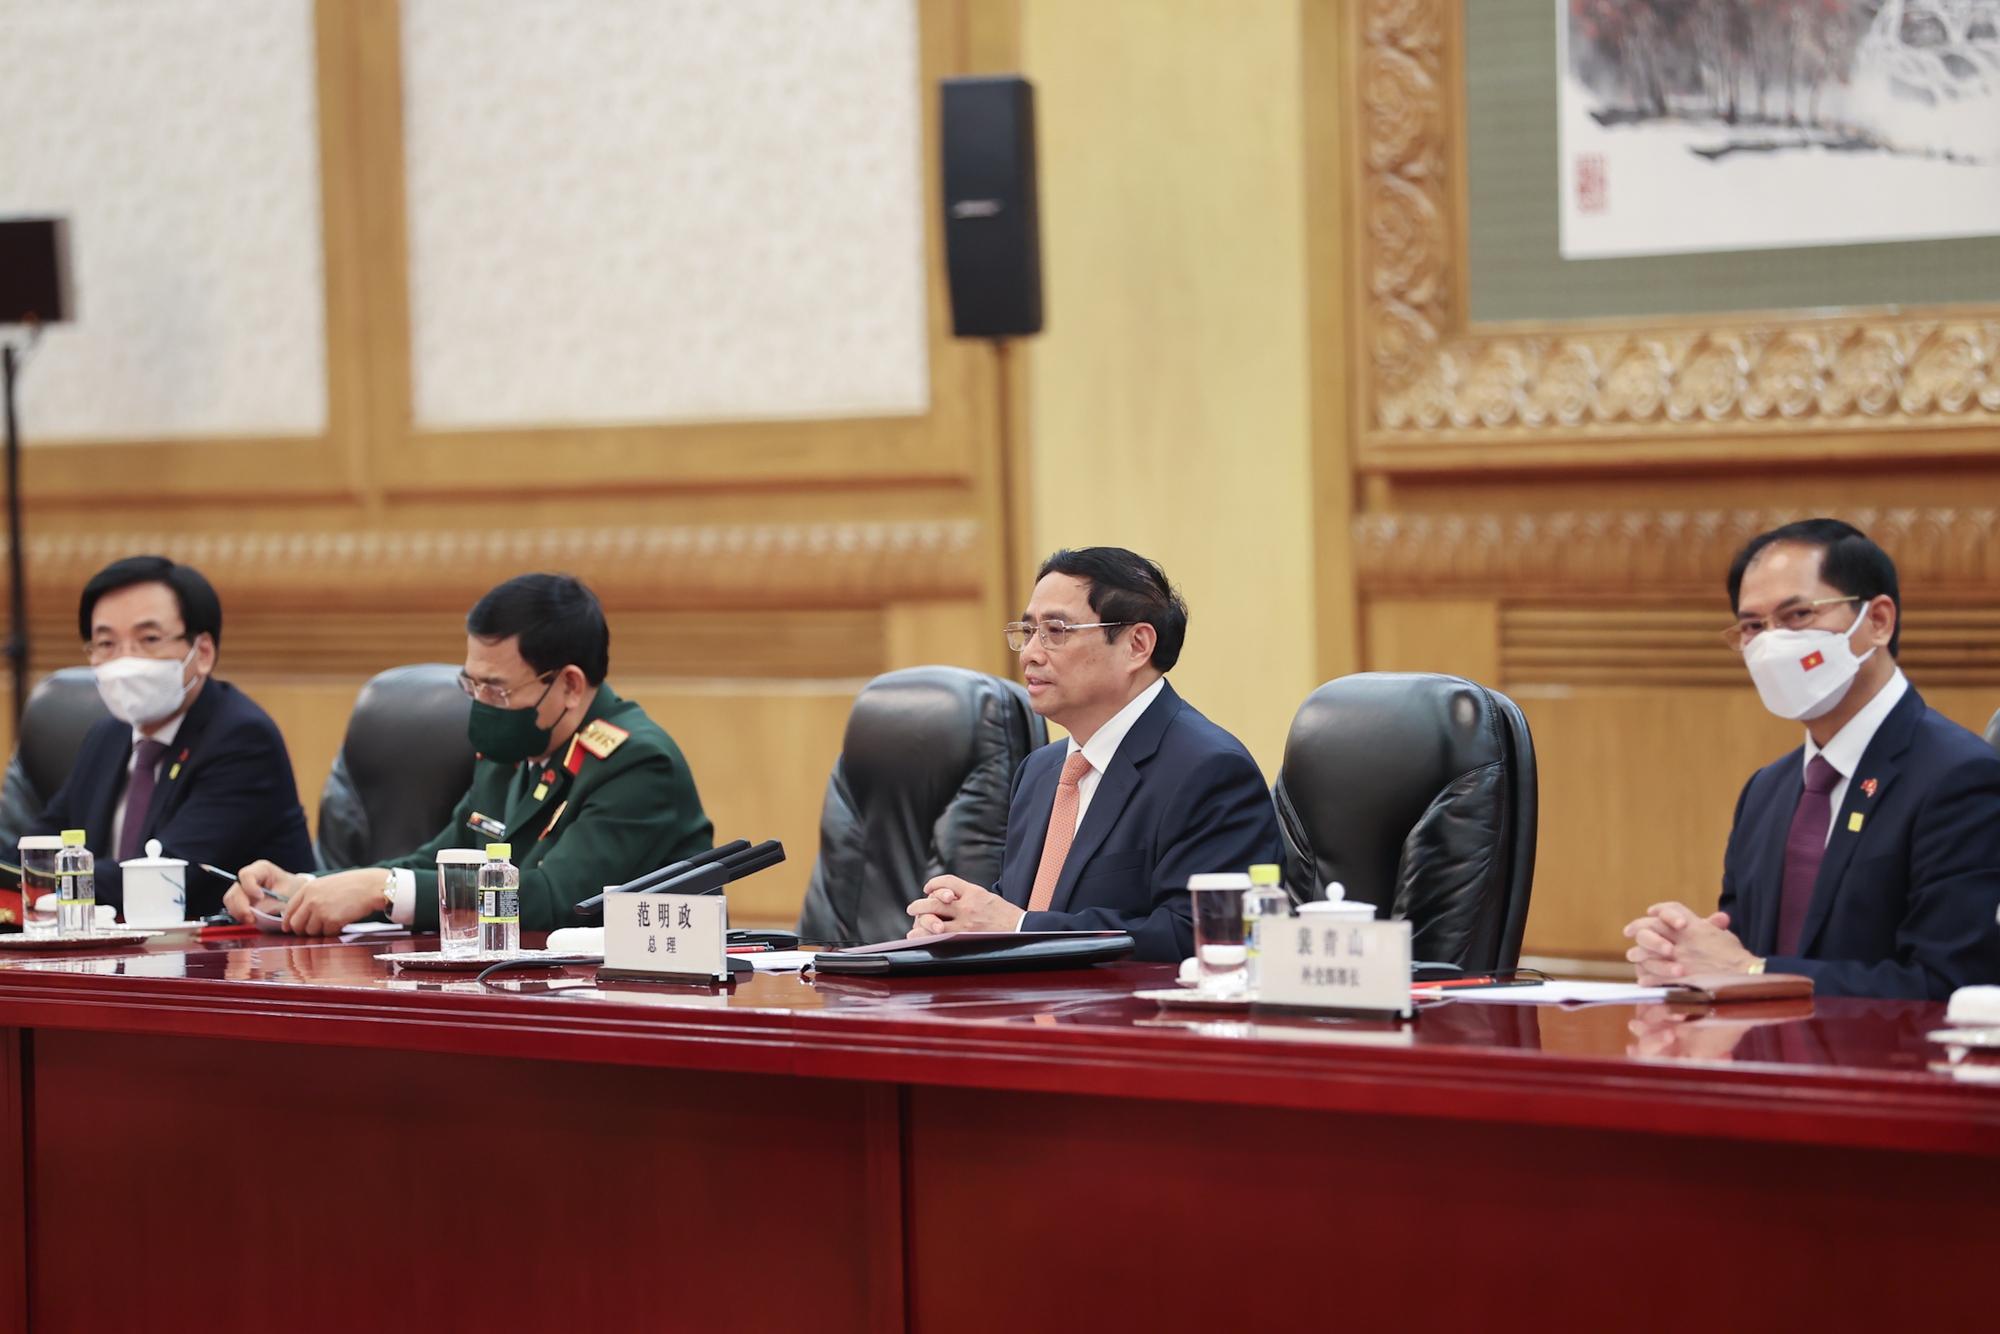 Chùm ảnh: Lễ đón chính thức Thủ tướng Chính phủ Phạm Minh Chính thăm Trung Quốc - Ảnh 8.